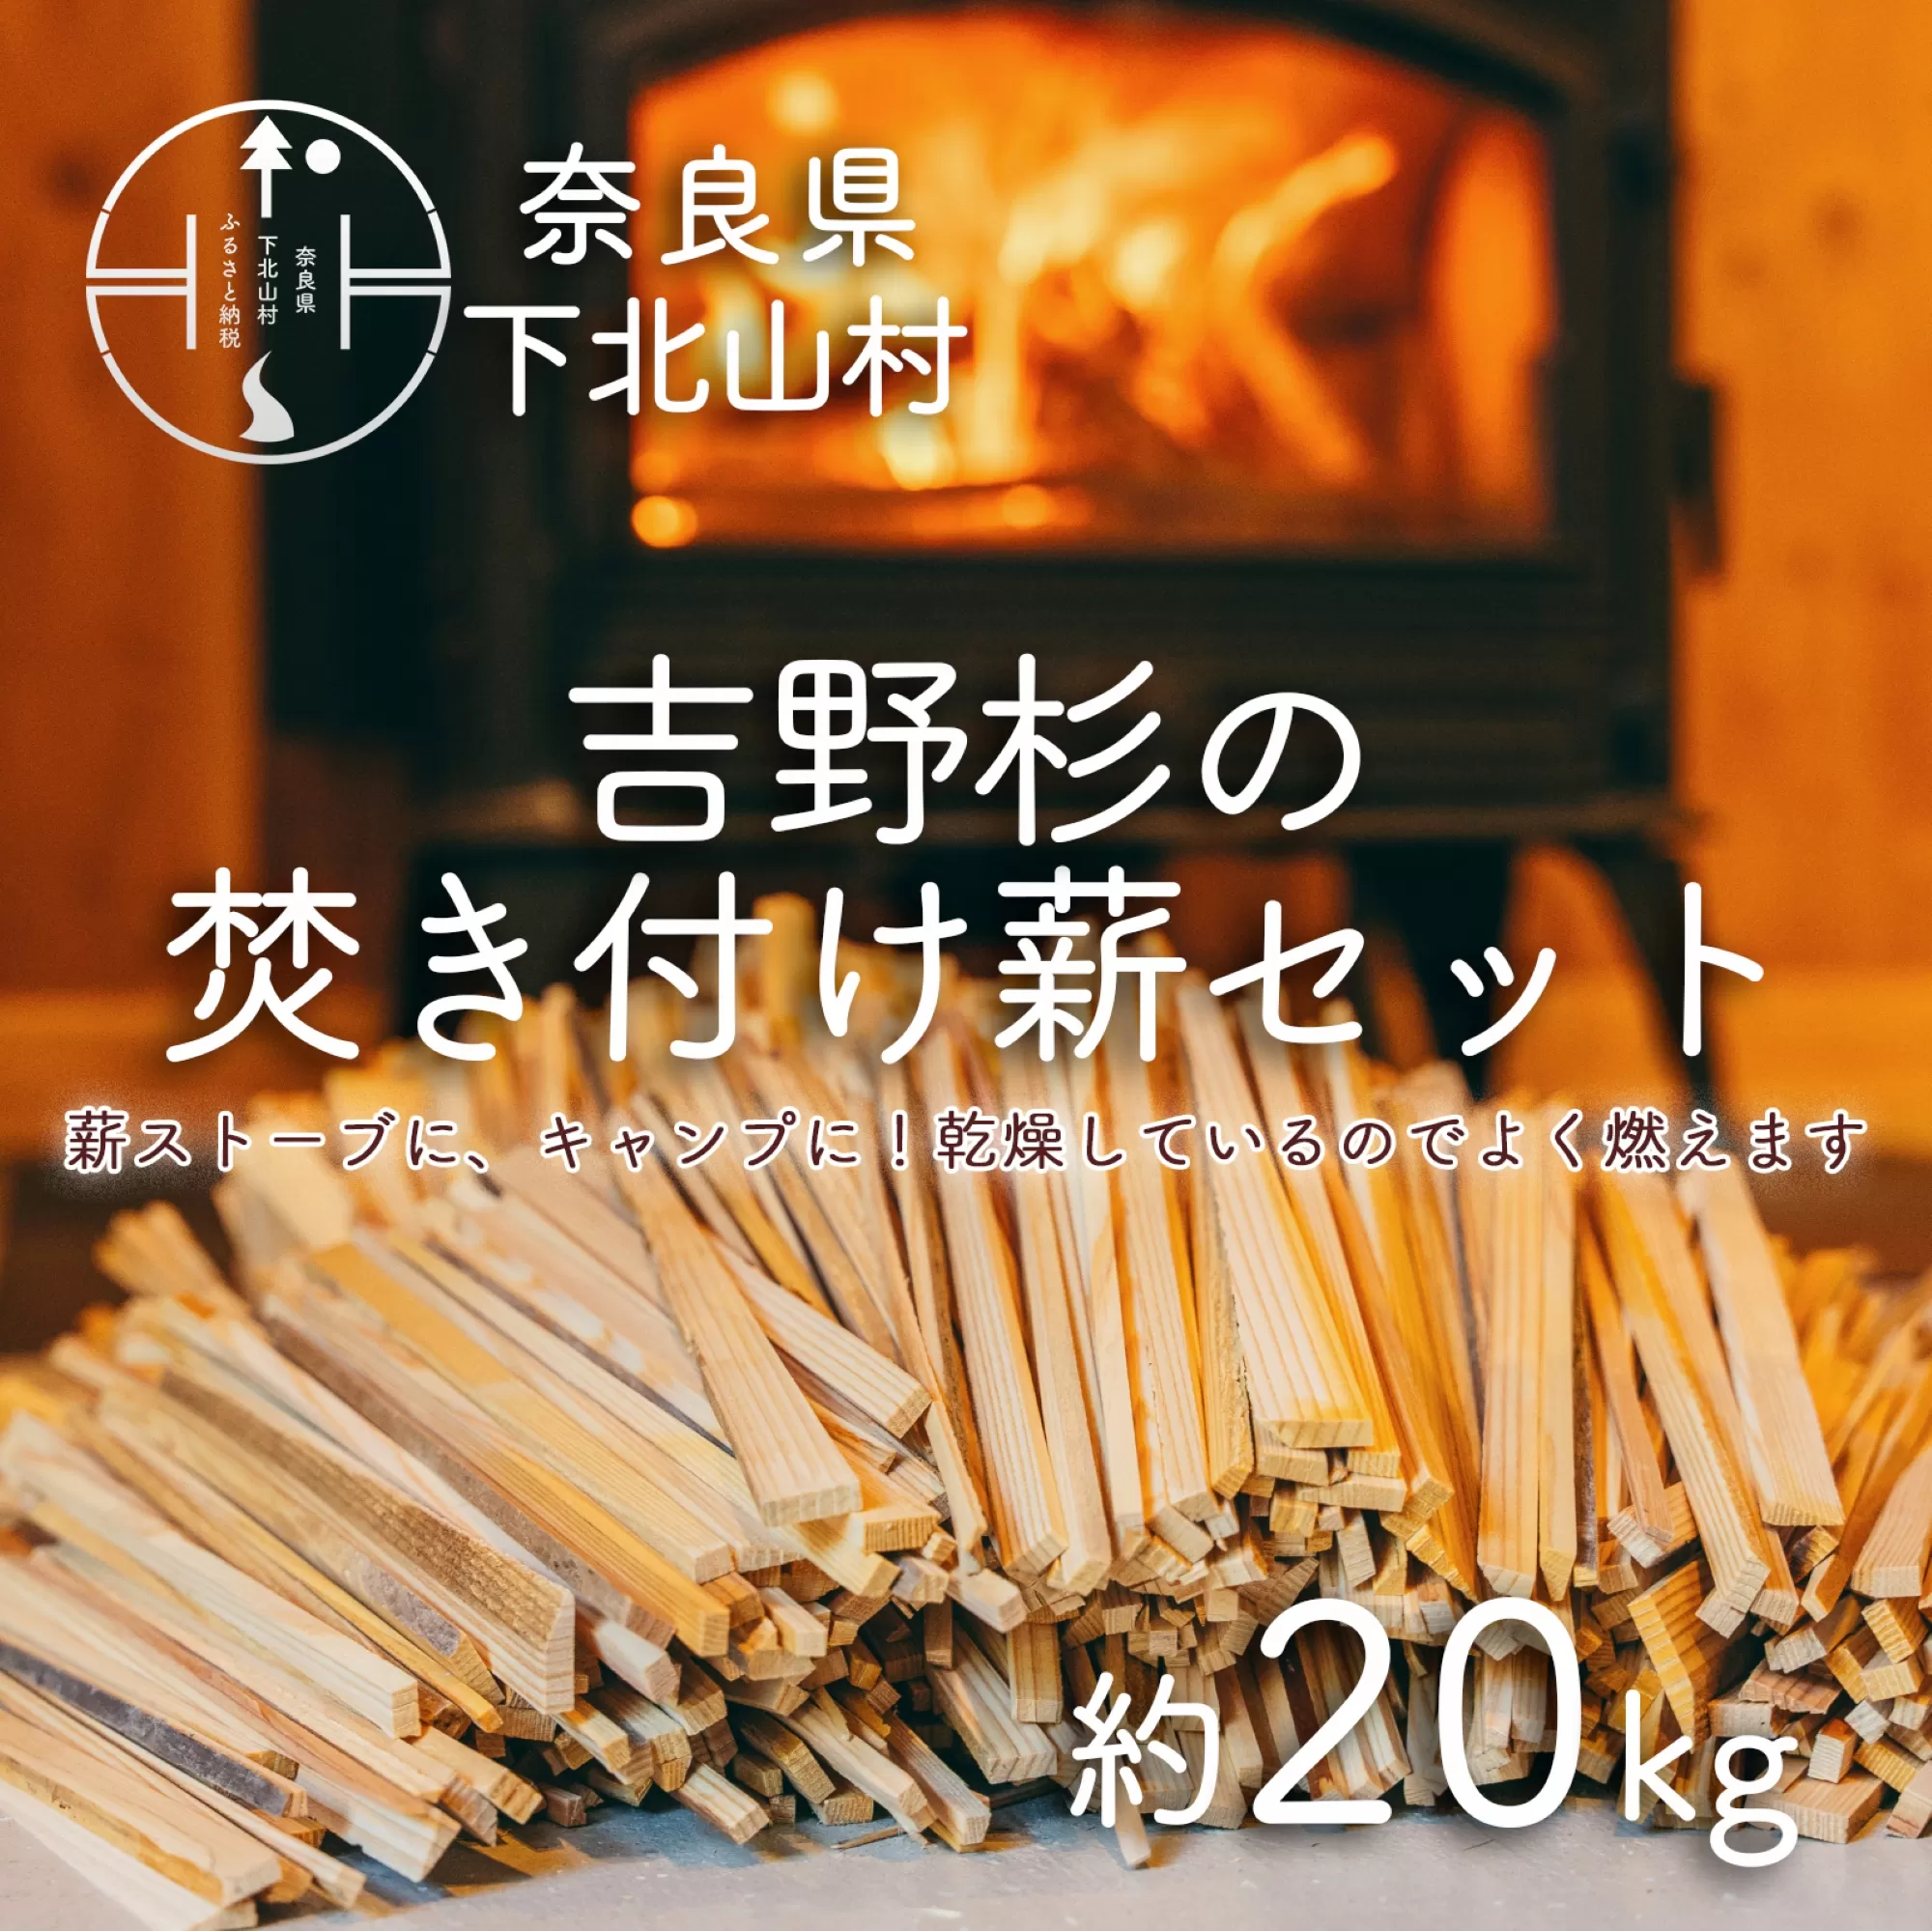 焚き付け薪セット 杉21~24cm 約20kg 奈良県産材 乾燥材 カンナくず付き 薪ストーブ アウトドア キャンプ 焚き火用 便利